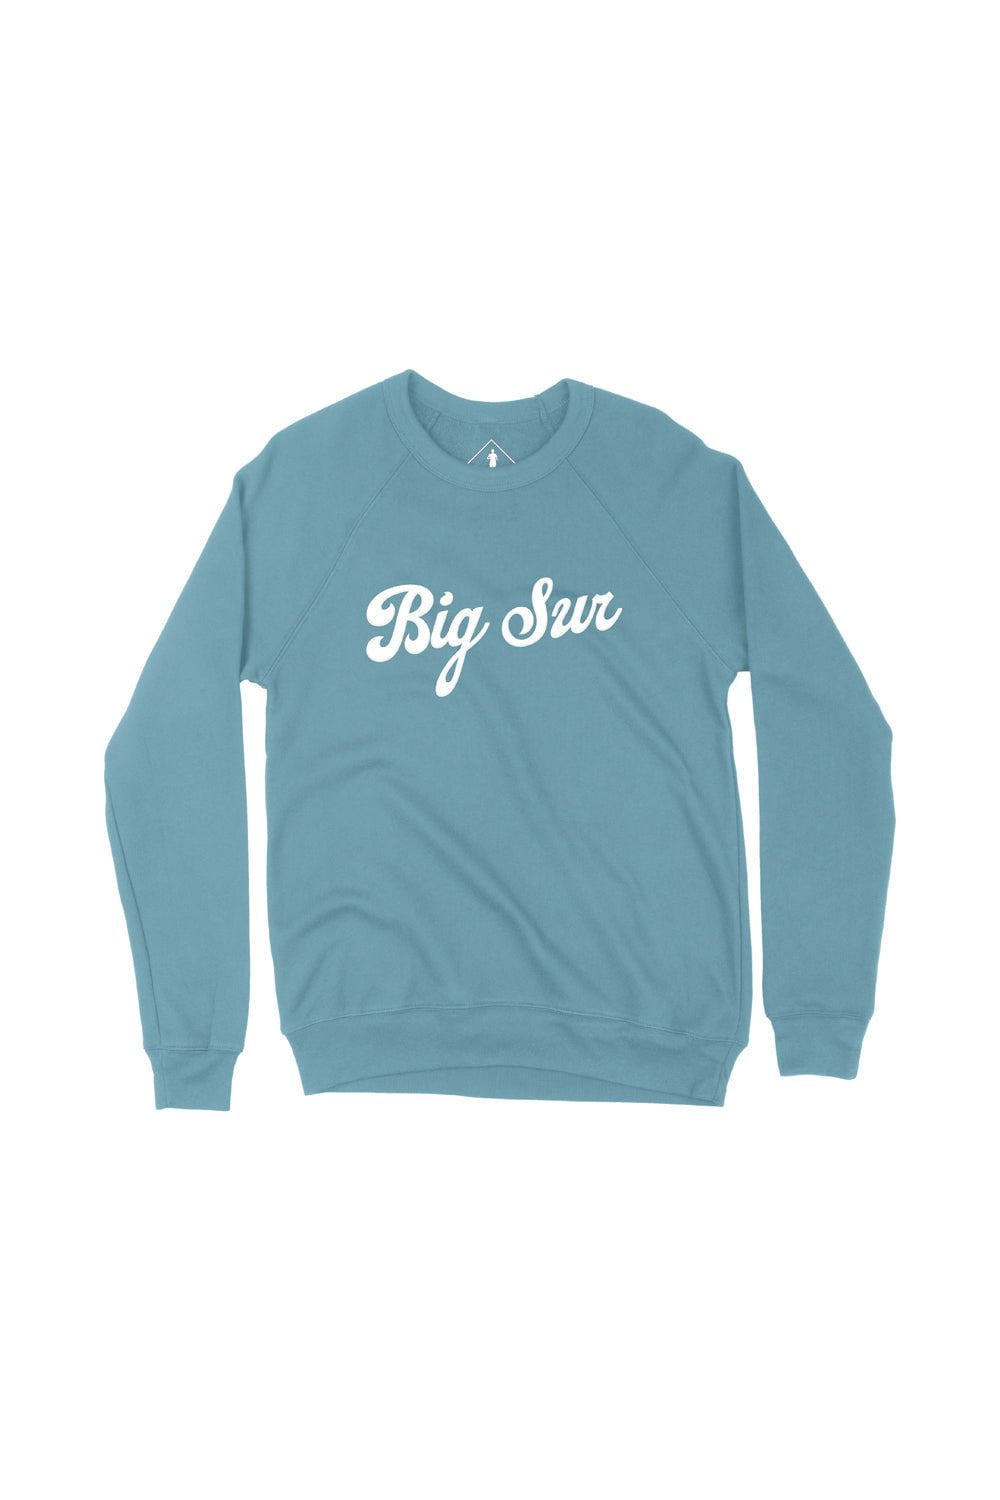 Sarah Marie Design Studio Sweatshirt Big Sur Sweatshirt